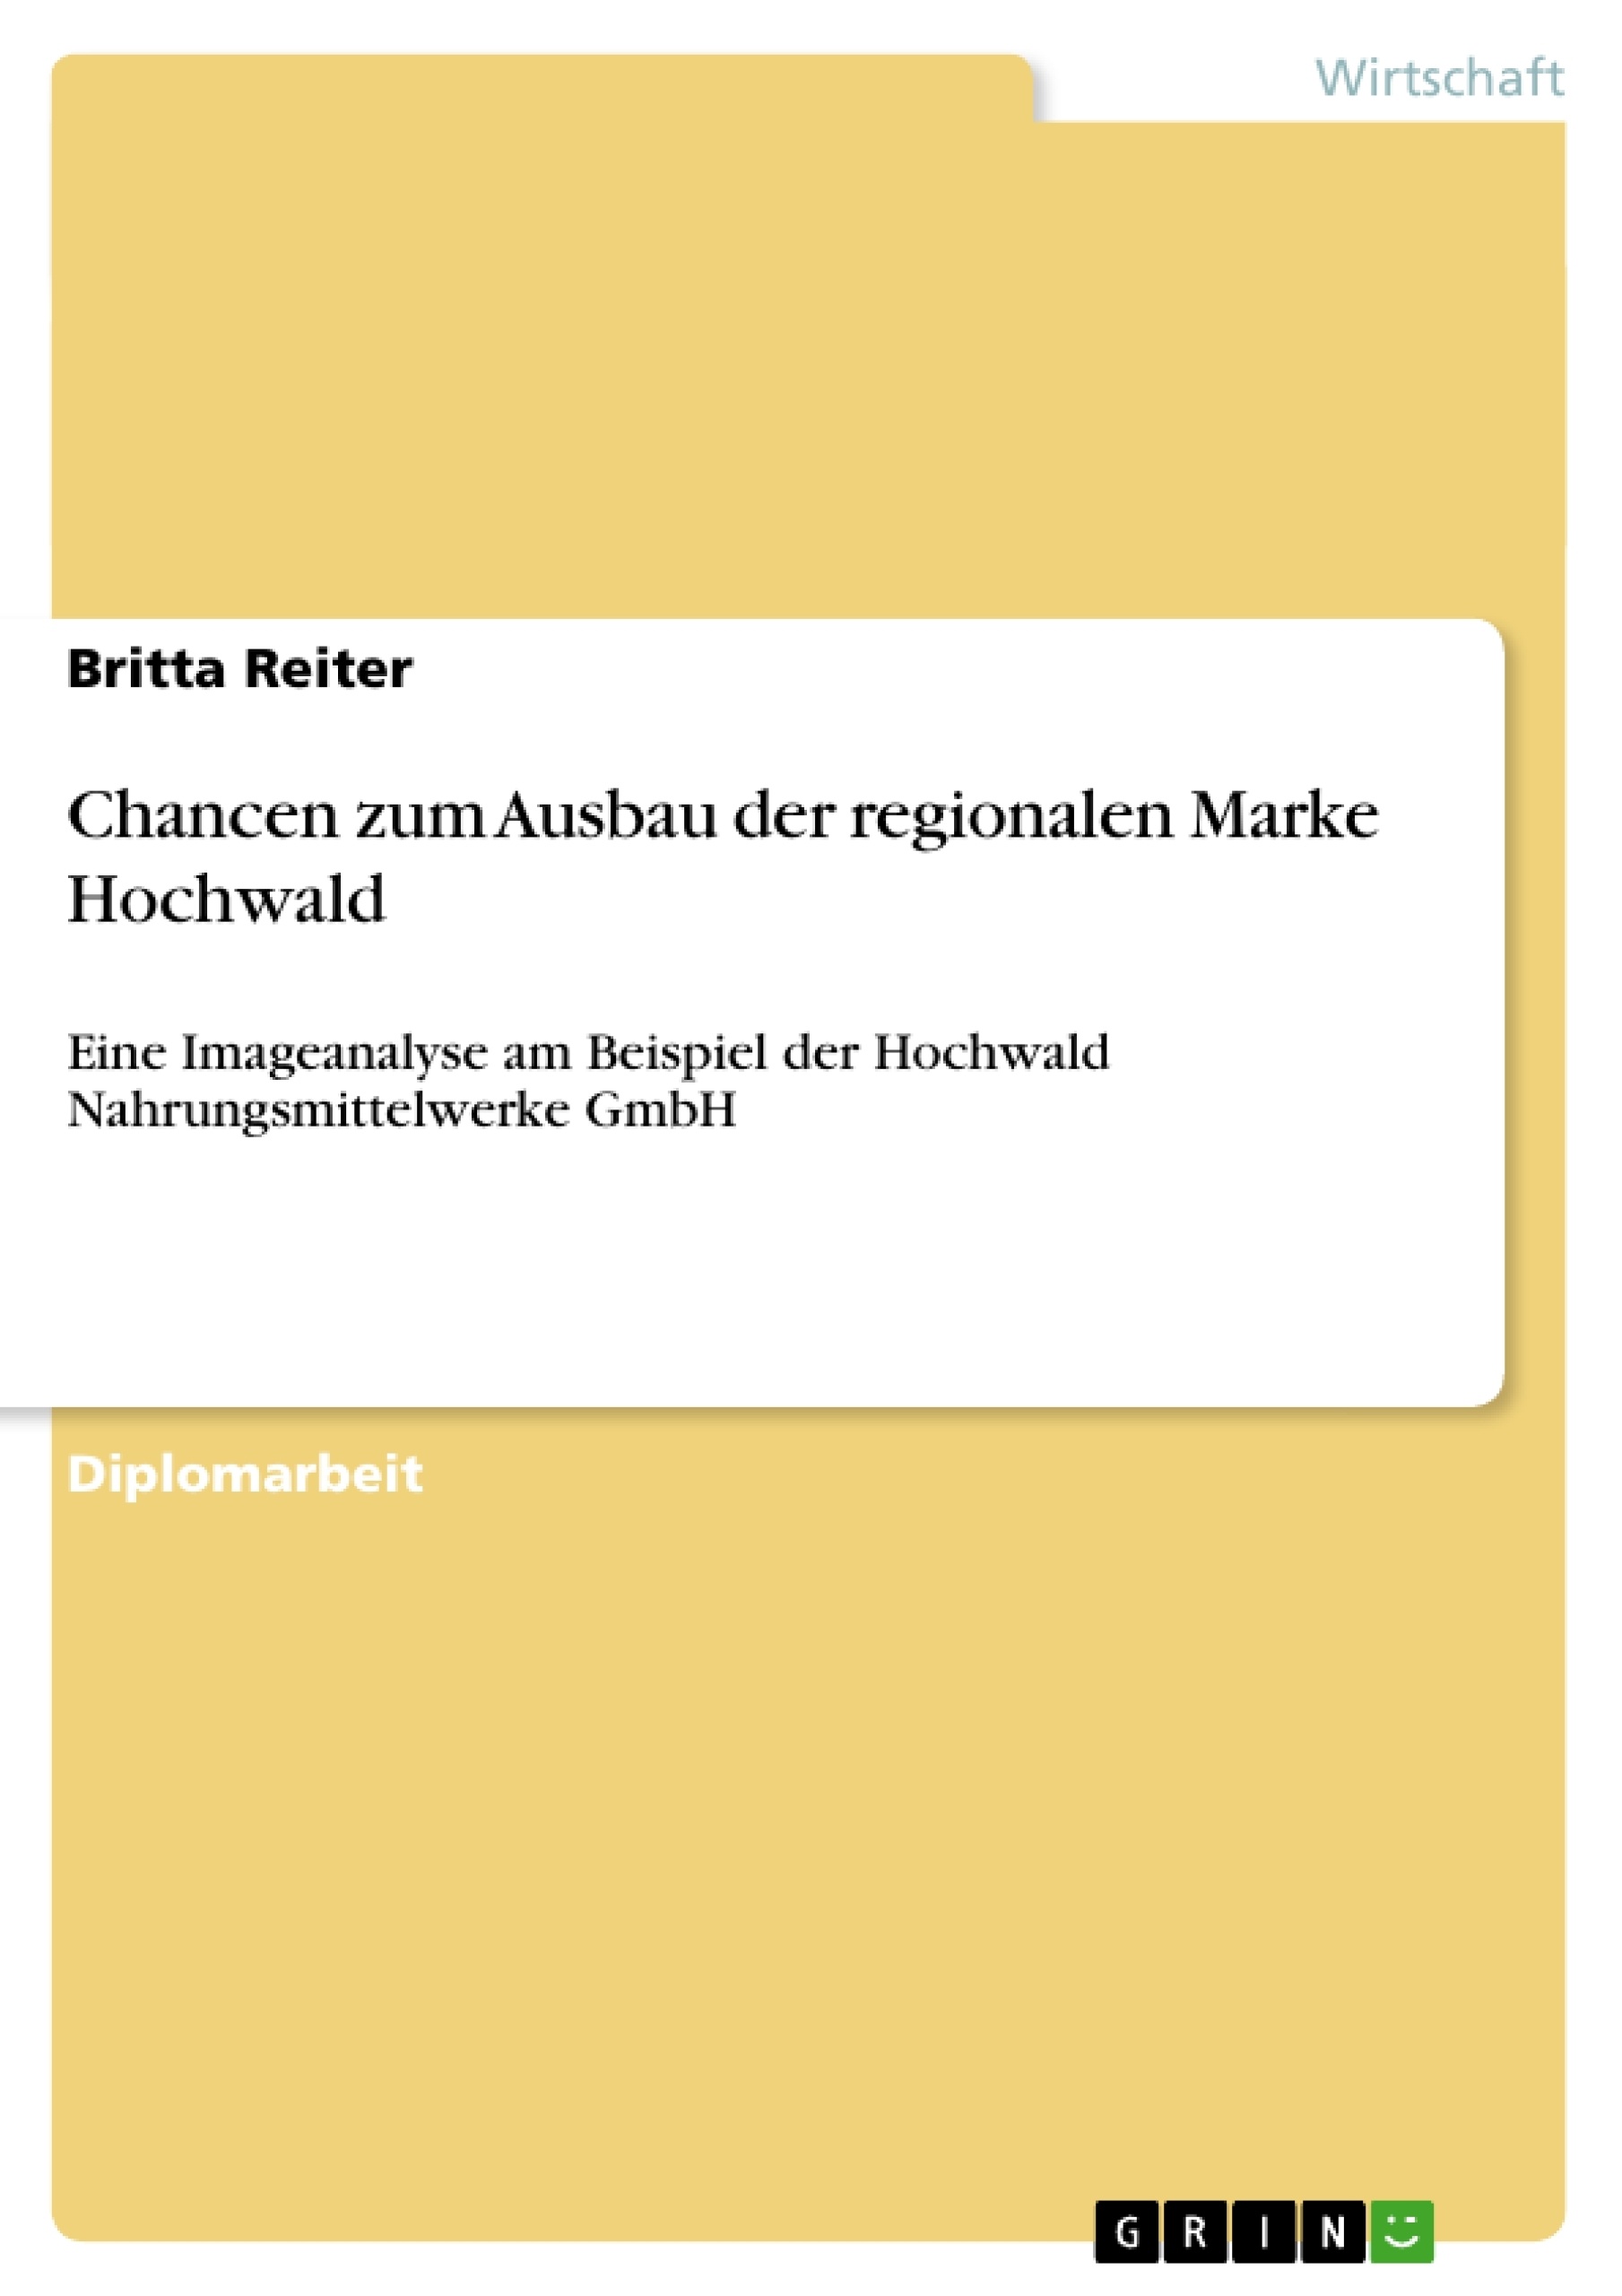 Título: Chancen zum Ausbau der regionalen Marke Hochwald